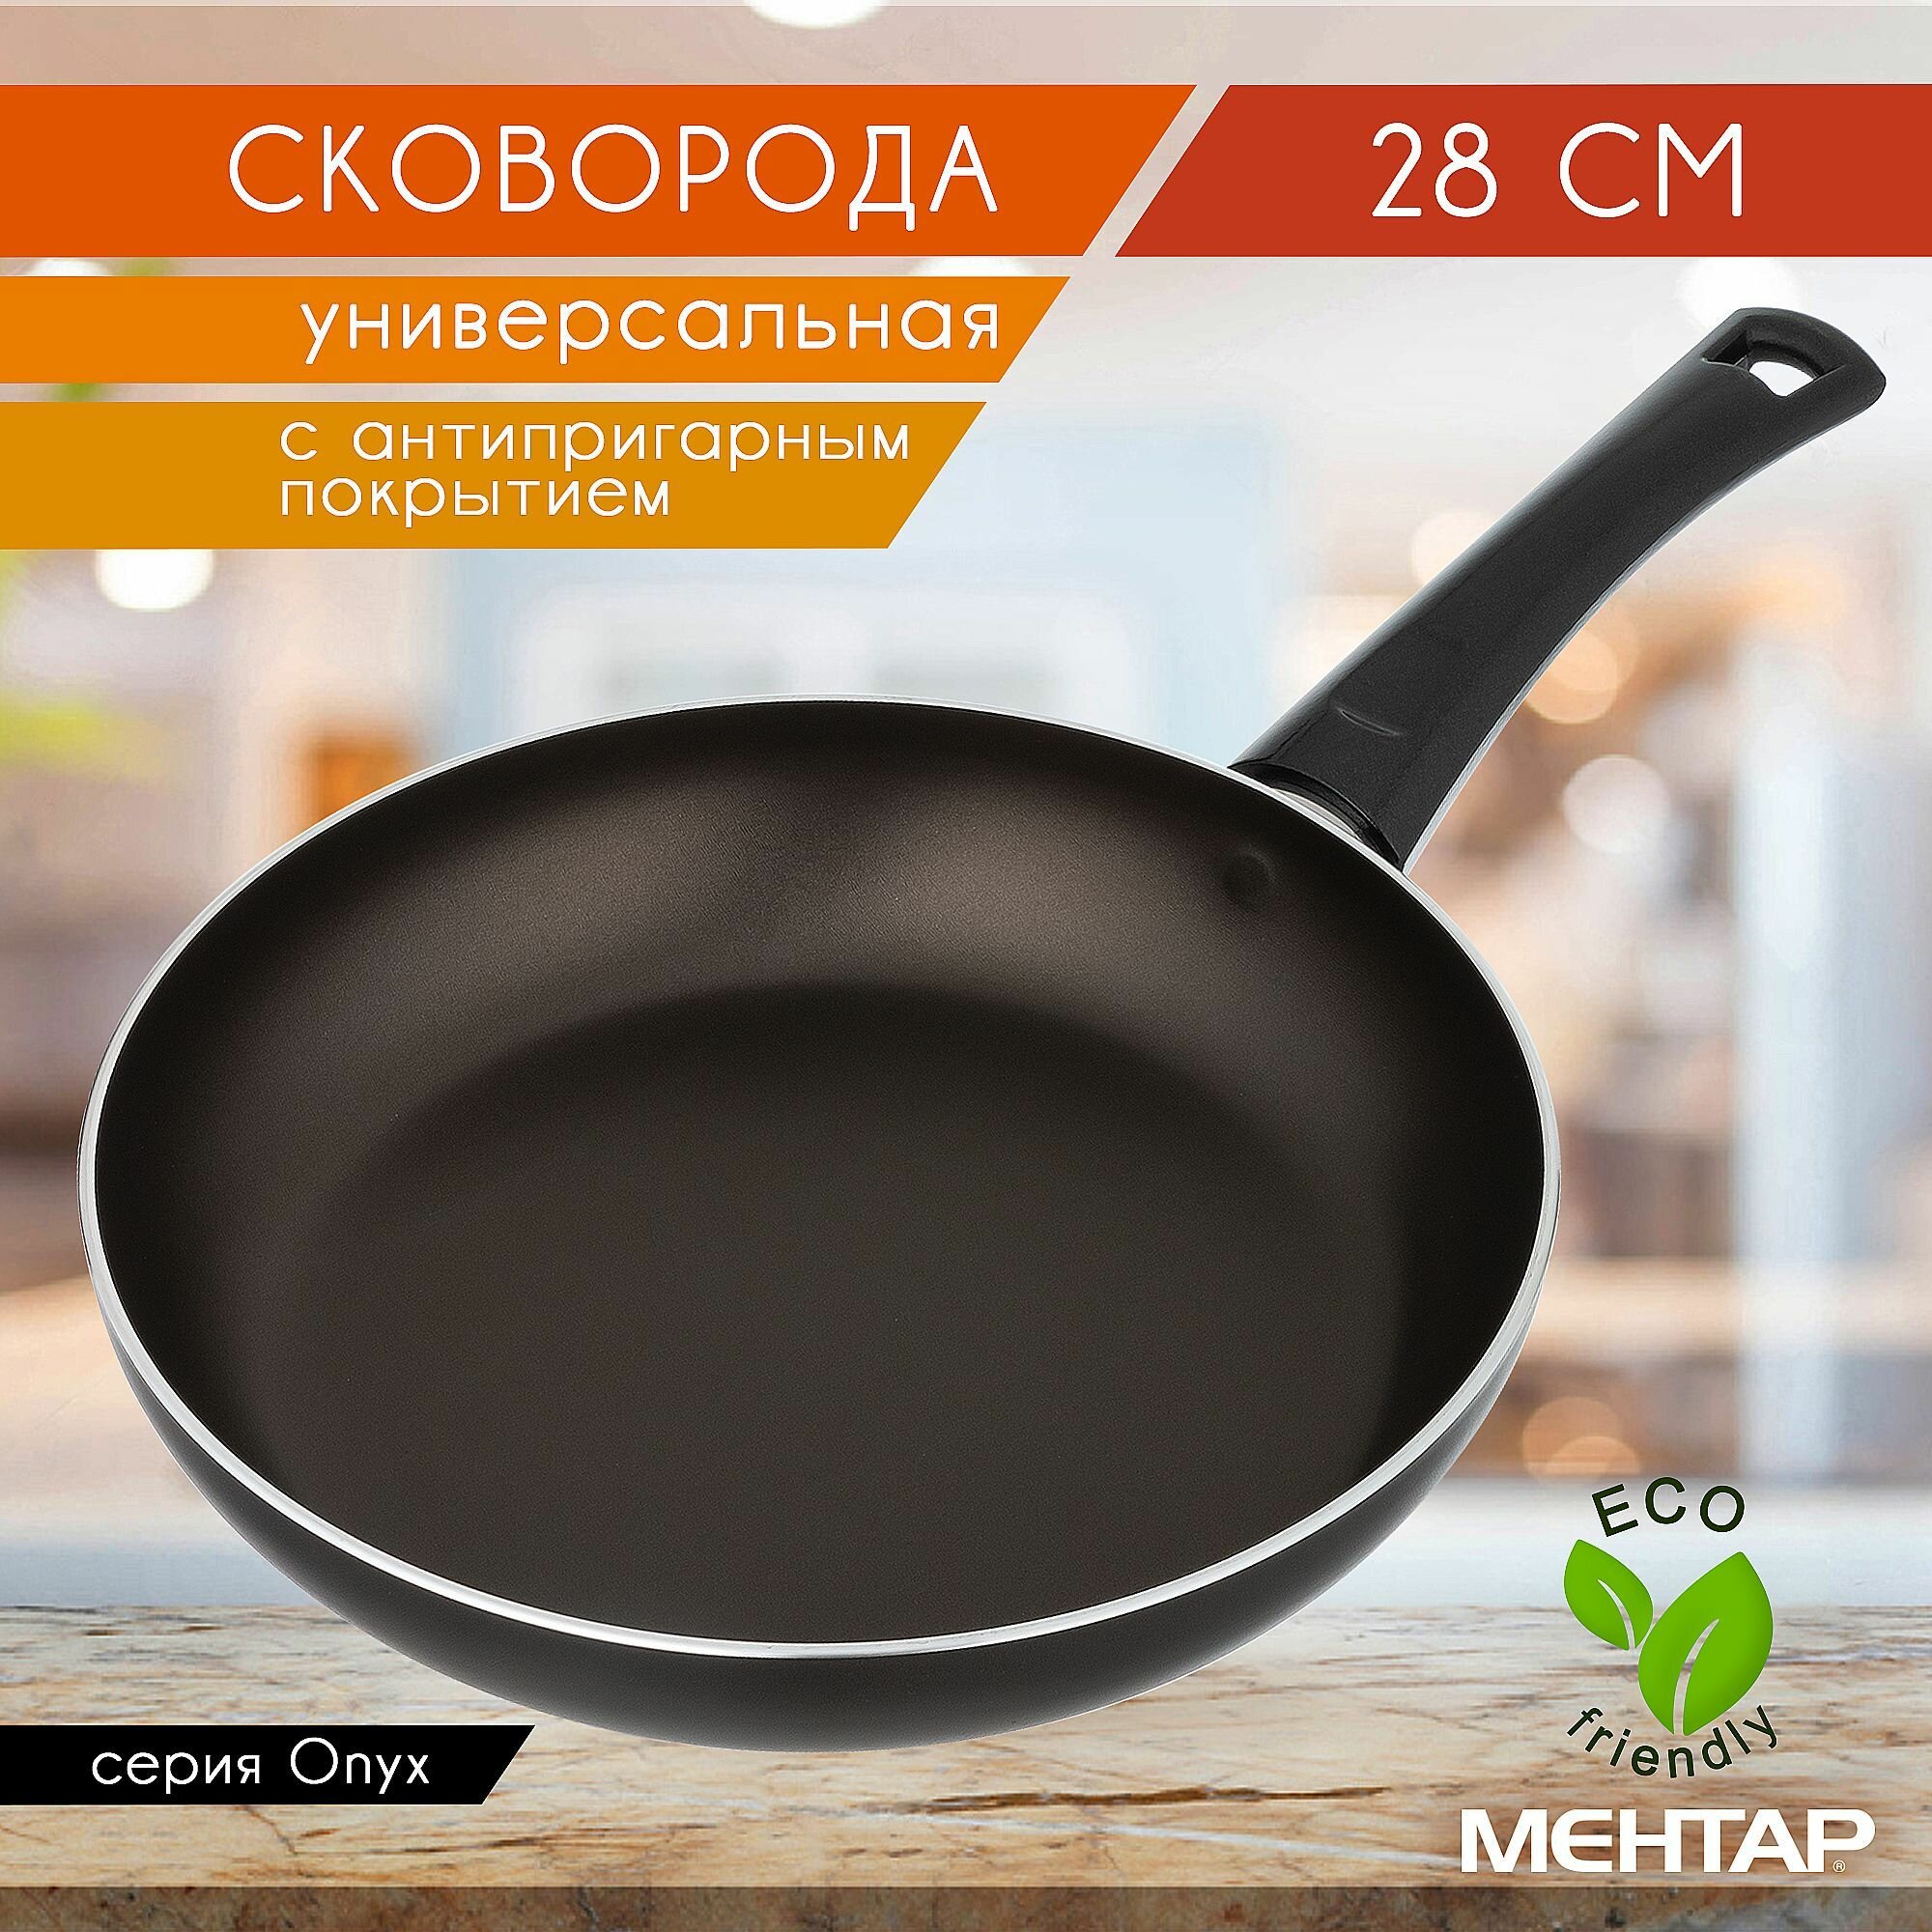 Сковорода с антипригарным покрытием MEHTAP 28 см ONYX глубокая универсальная